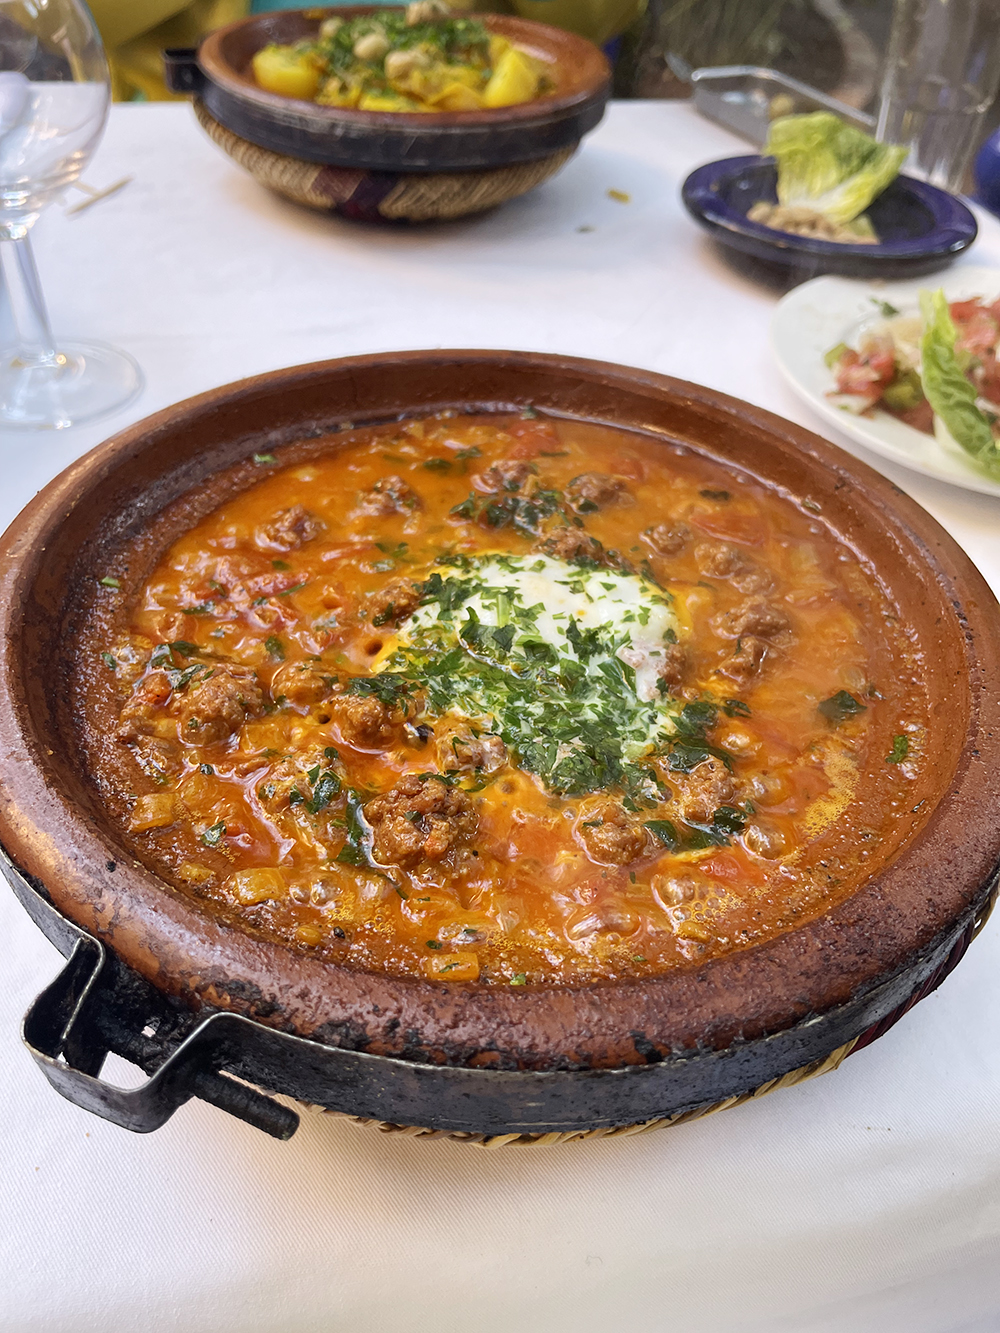 Здесь есть высокая европейская кухня и, конечно, тажин — основное блюдо марокканской кухни, мясо с лимоном и оливками, к которому подают кускус или овощи